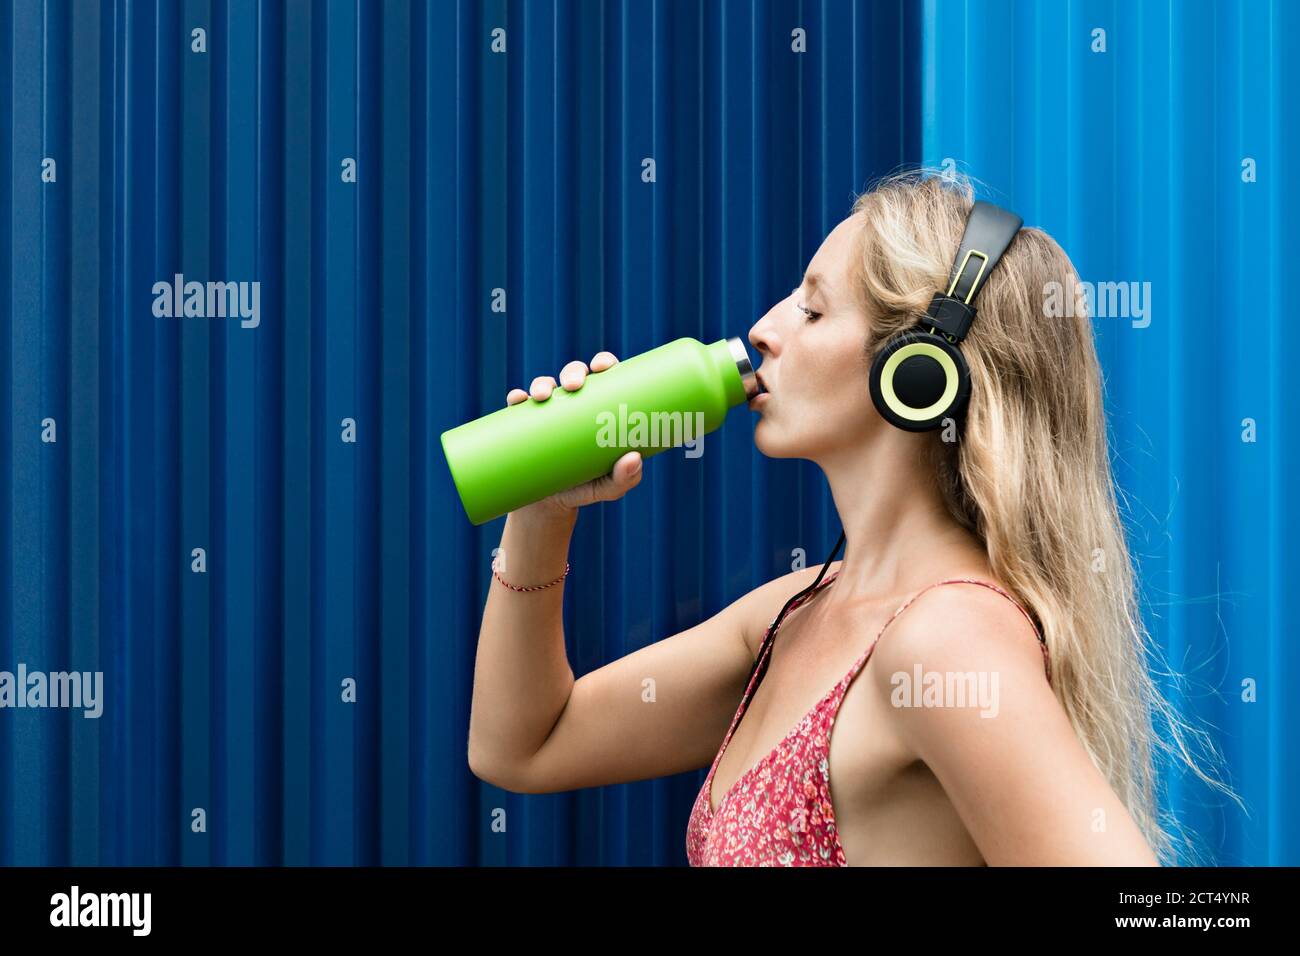 Jeune femme blonde sur fond bleu buvez de l'eau de source fraîche provenant d'un flacon vert réutilisable. Un style de vie sain en ville d'été. Banque D'Images